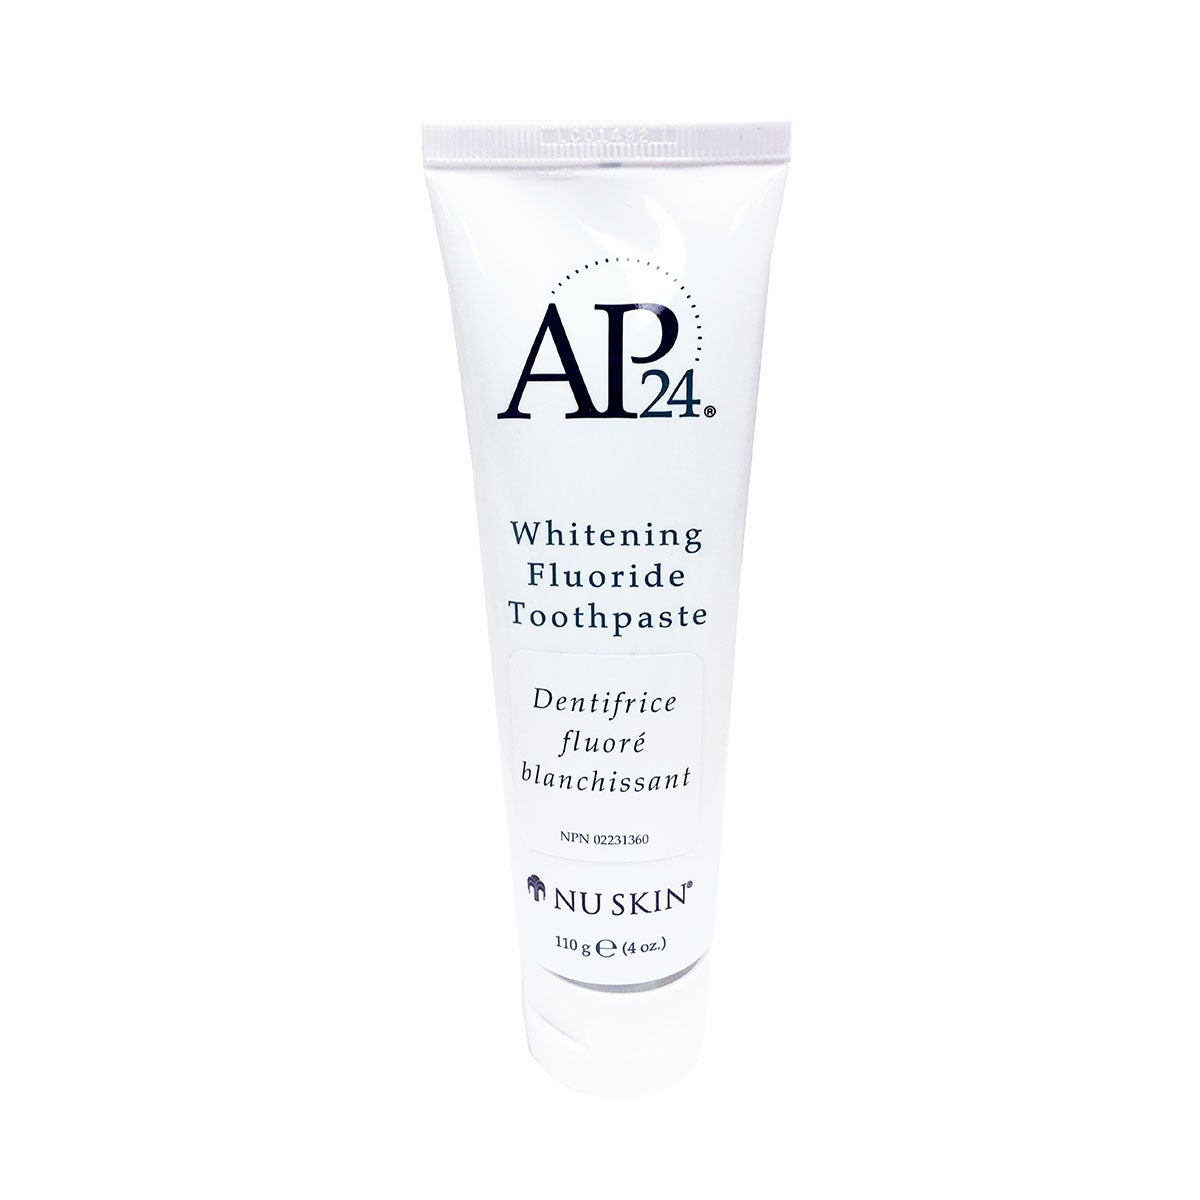 AP24 Whitening Fluoride Toothpaste White Background